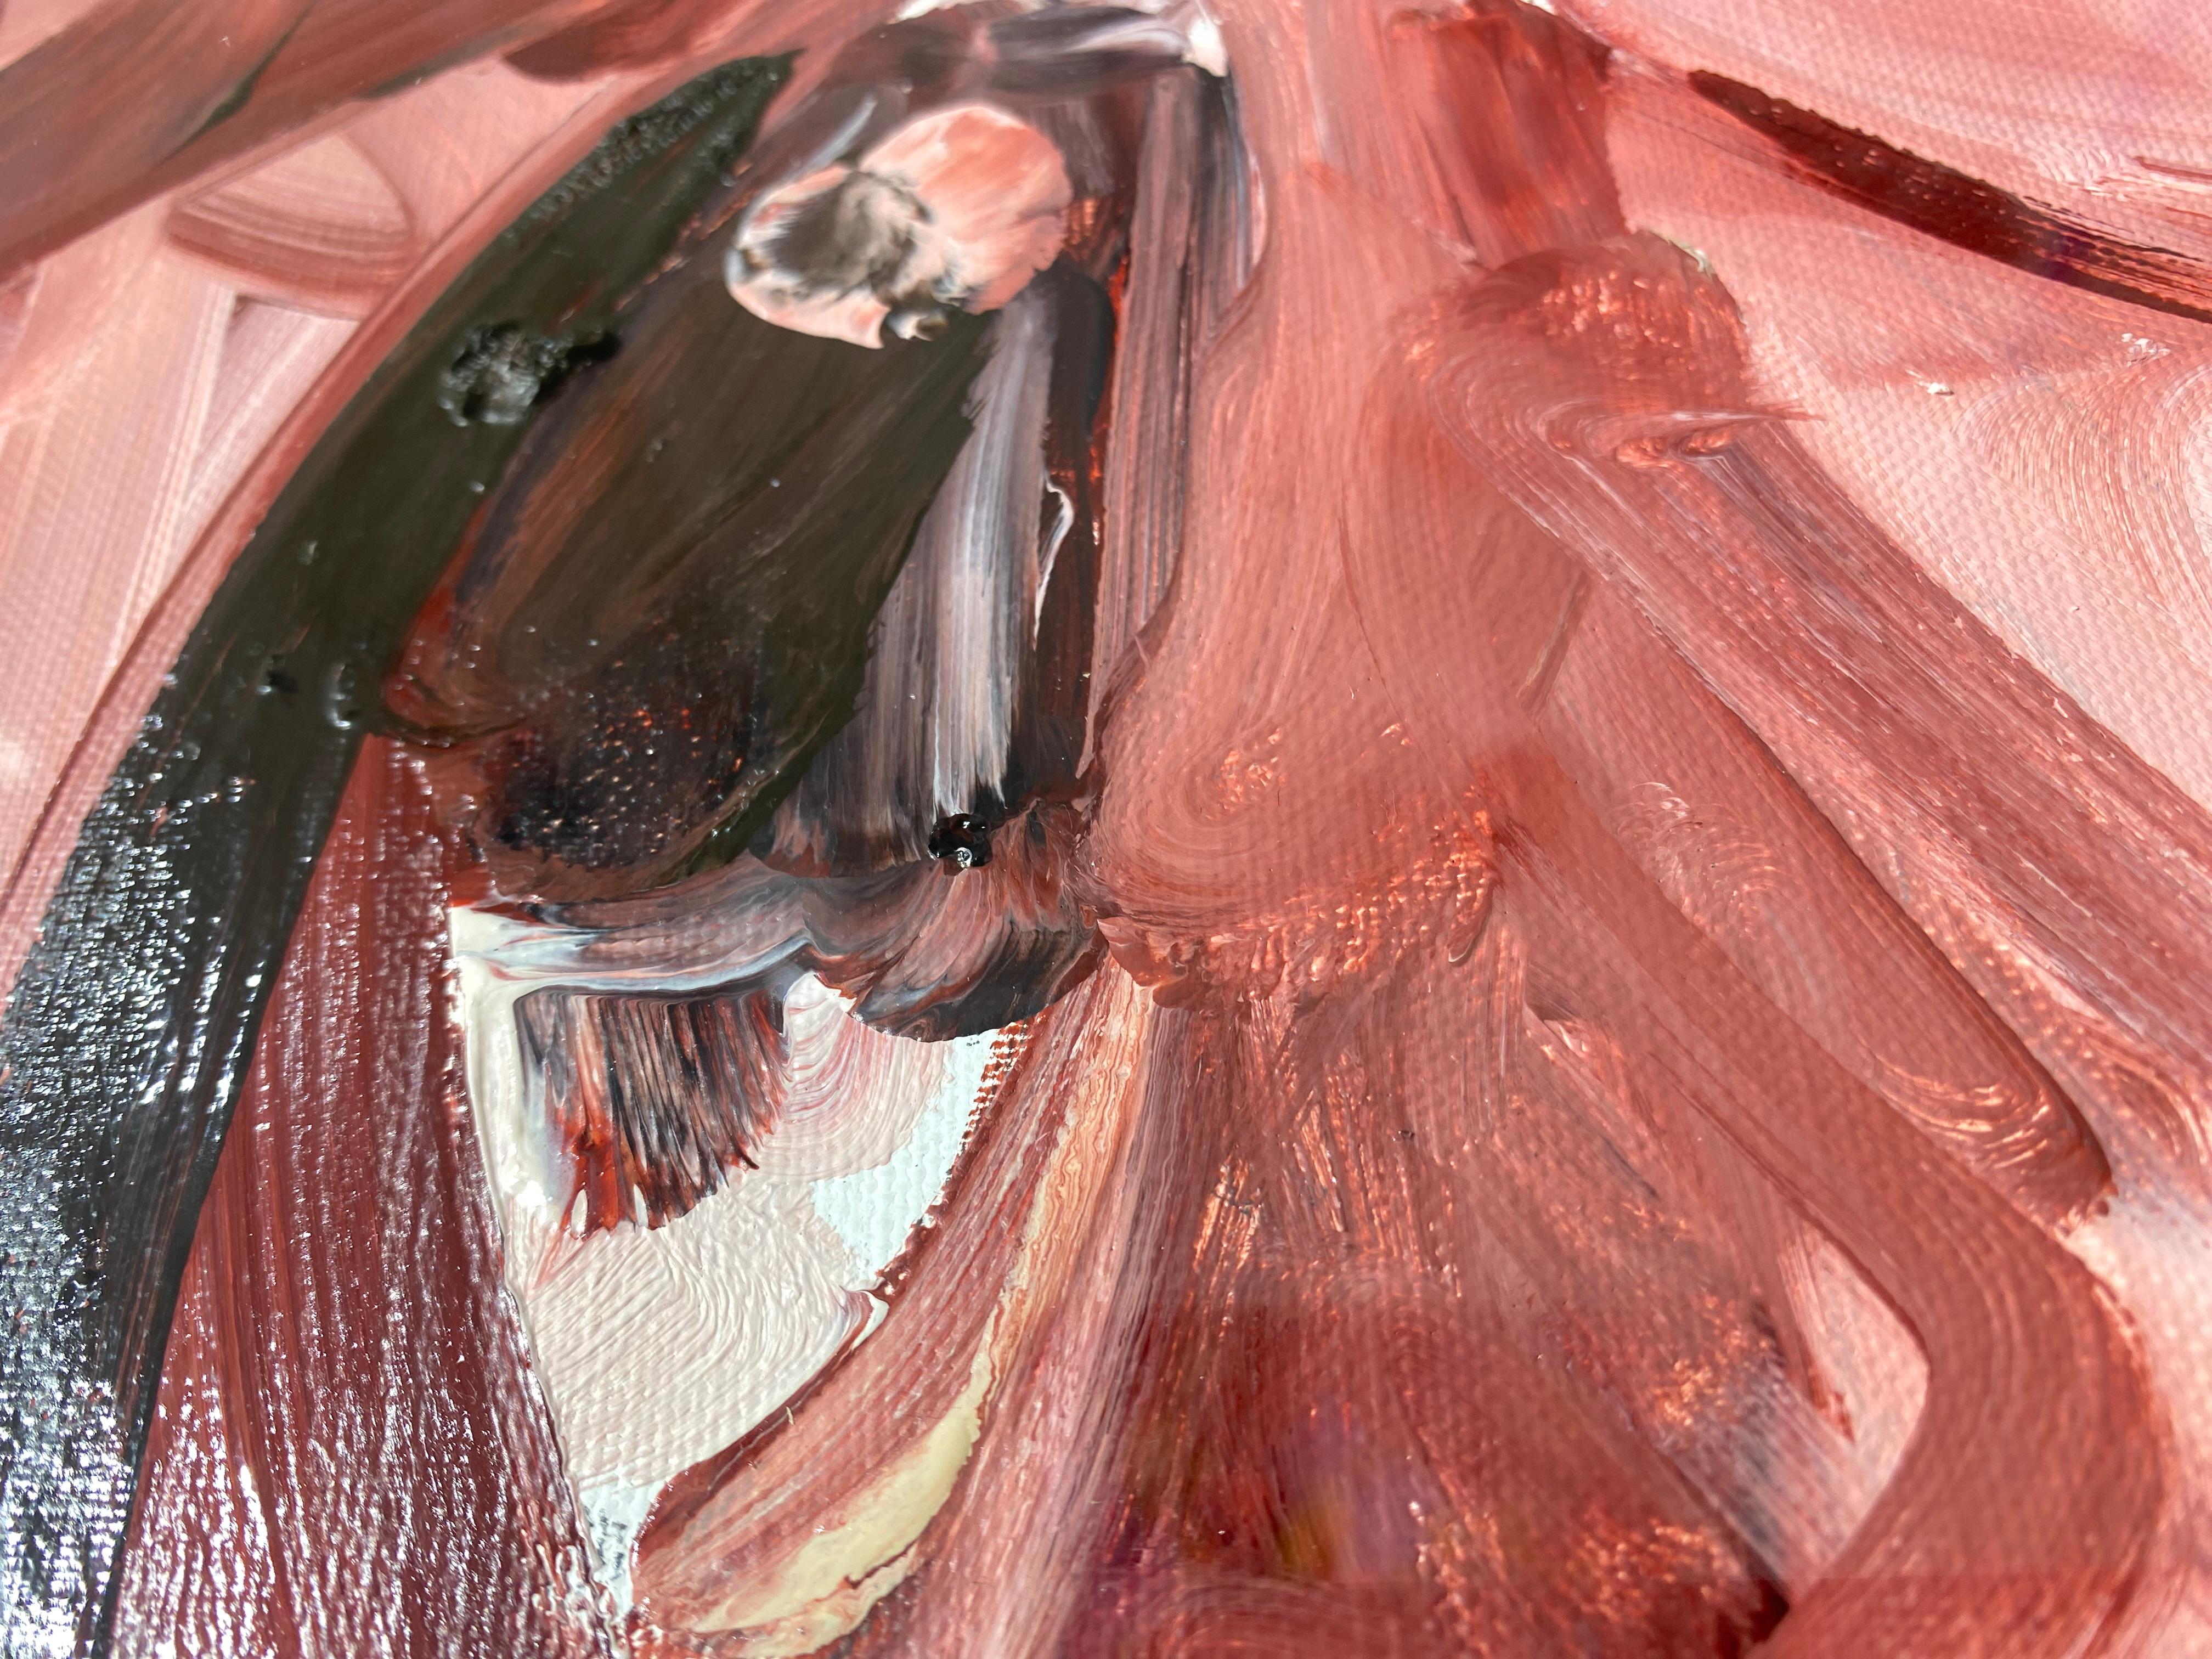 Étude, 2012
Öl auf Leinwand

In den Zeichnungen von Philippe Pasqua ist viel Zartheit zu spüren, was die Stärke der einzelnen Werke jedoch keineswegs schmälert. So entsteht in seinen zahlreichen Werken ein Flirt zwischen Finesse und Brutalität.